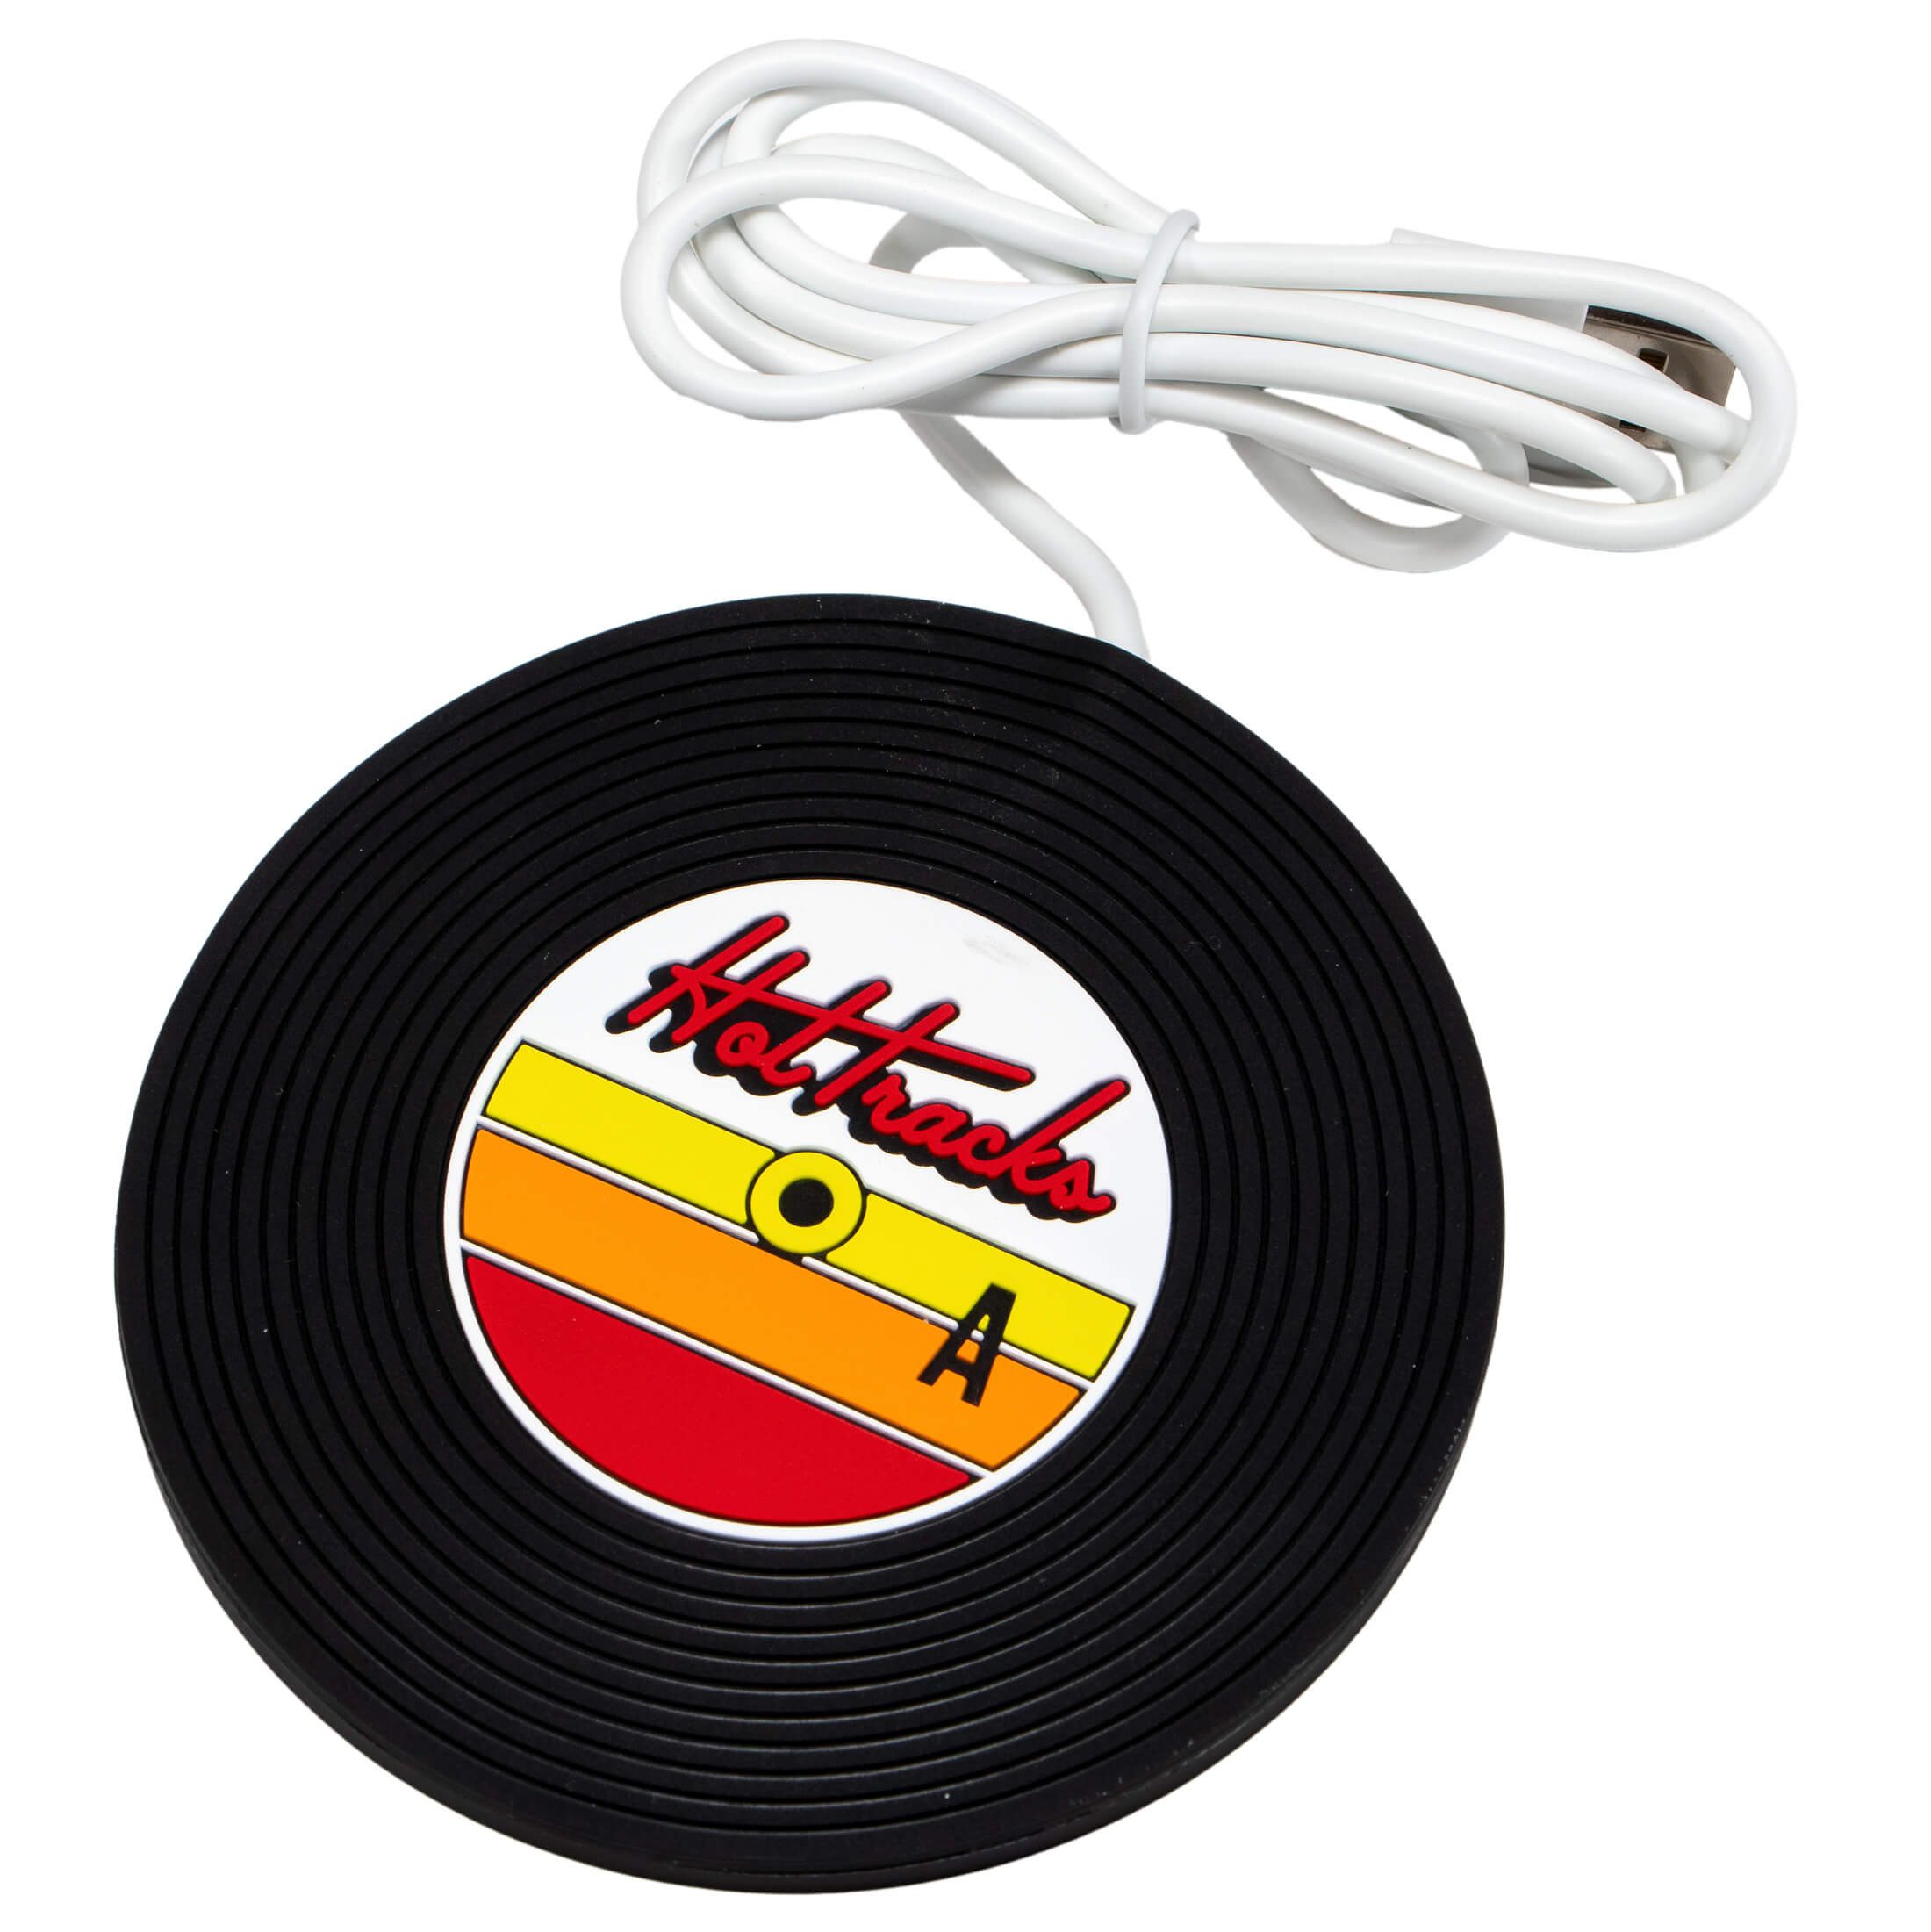 MAGS Tassenwärmer Tassenwärmer Vinyl Schallplatte USB Getränkewärmer Hot Tracks Retro, hält Getränke warm (max 70 Grad)